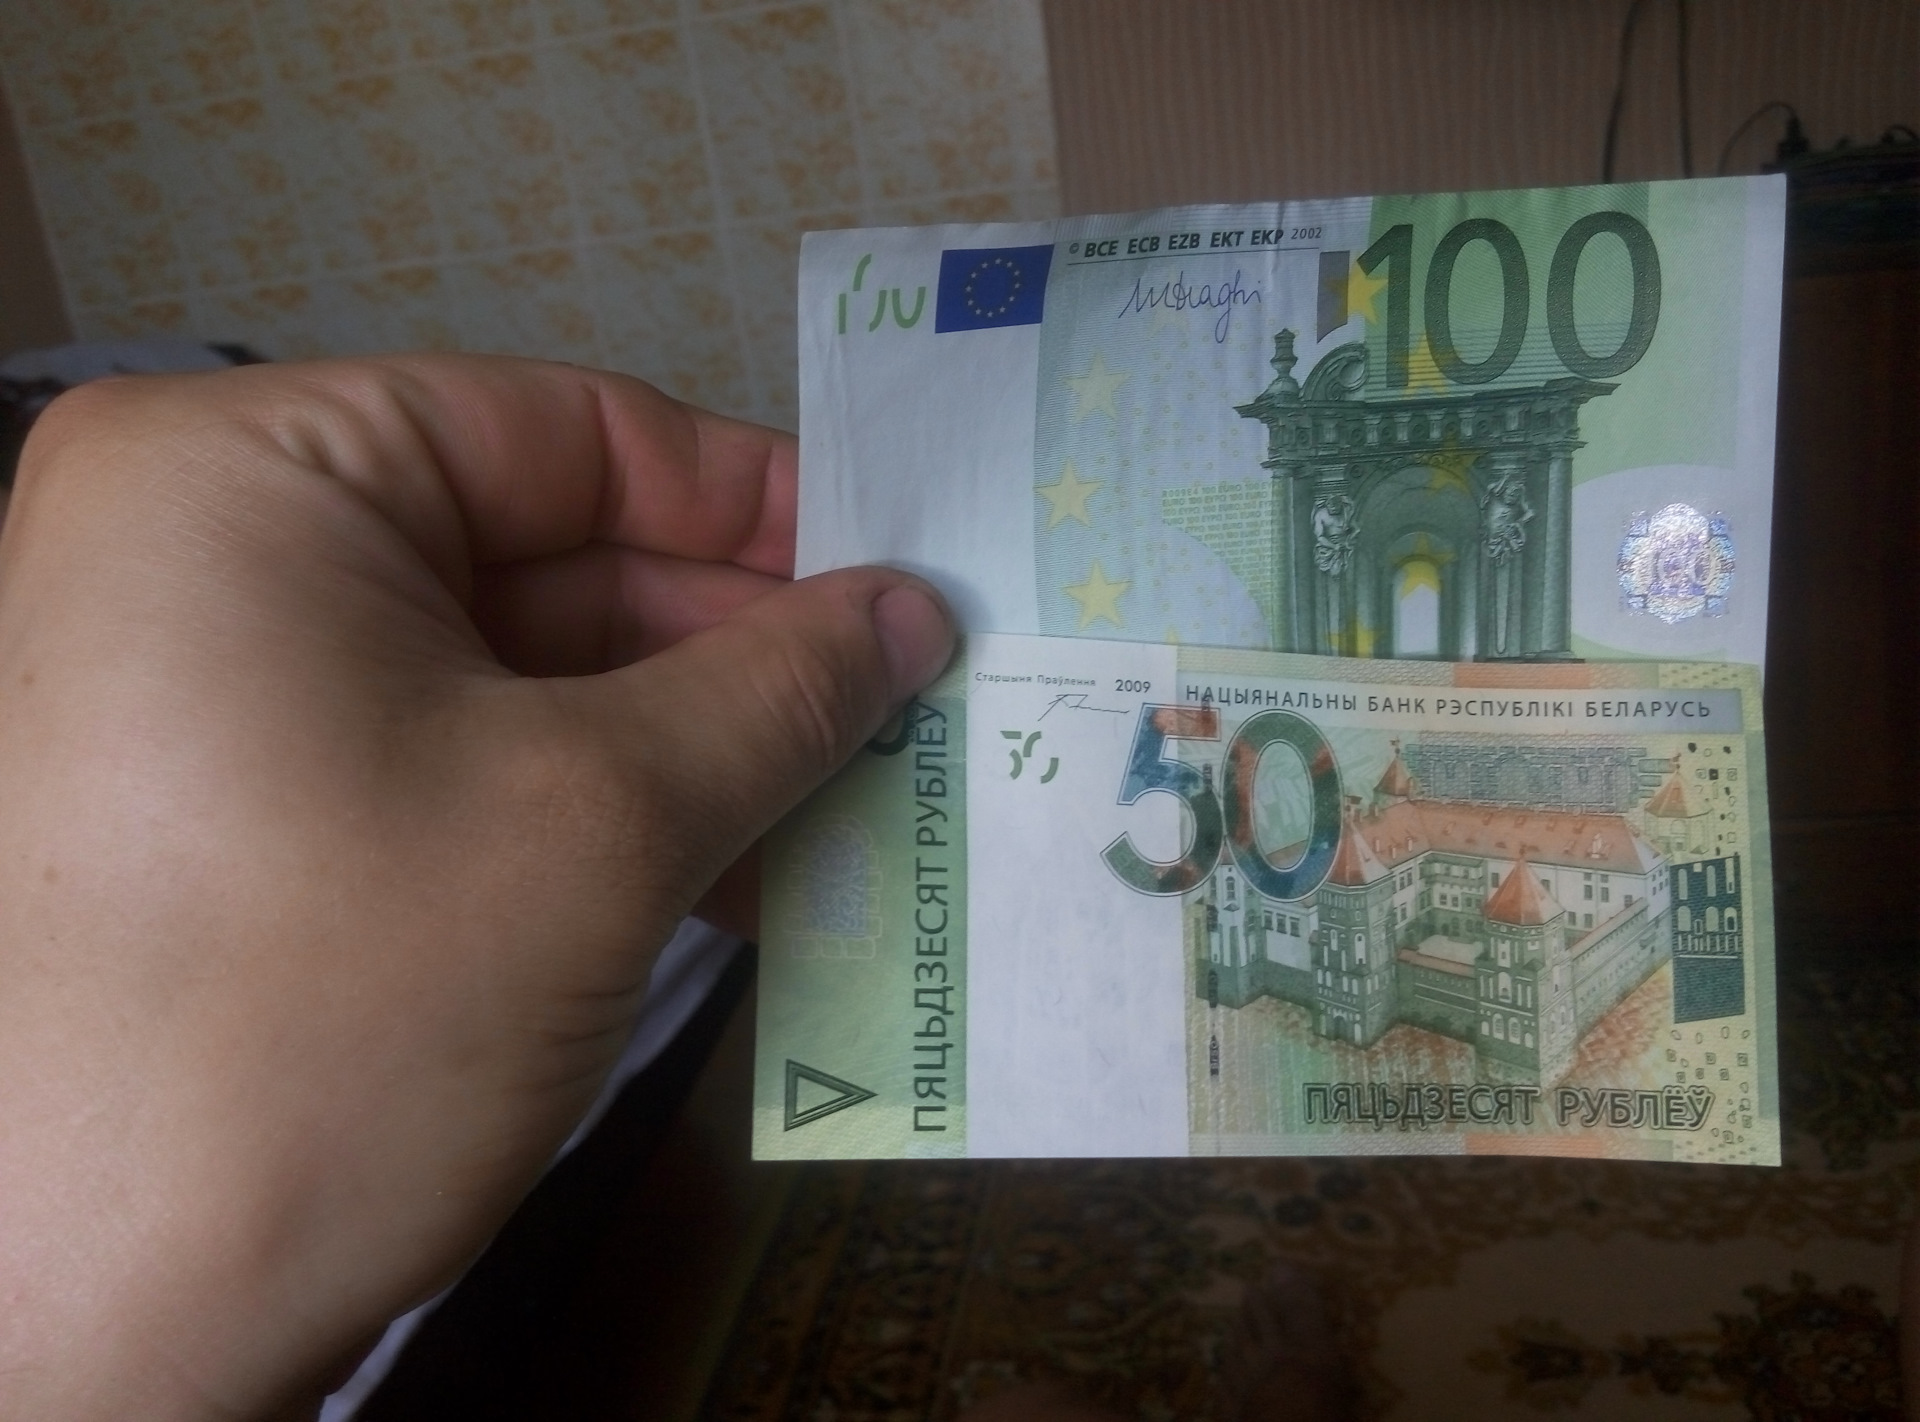 Деньги 300 рублей